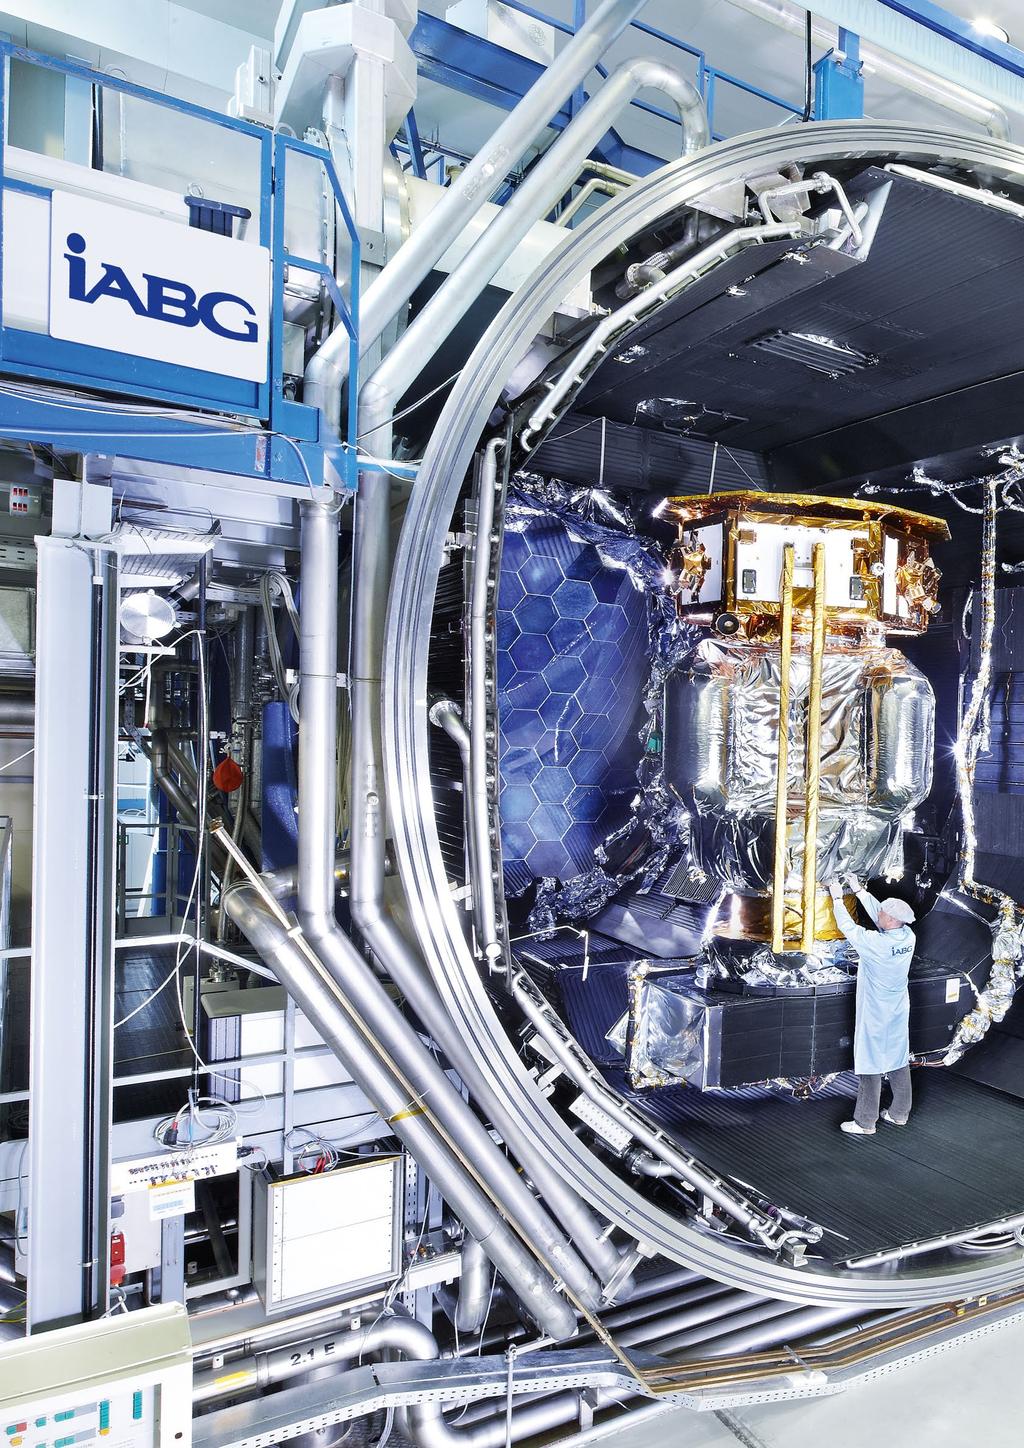 LISA Pathfinder is an ESA Thermal vacuum